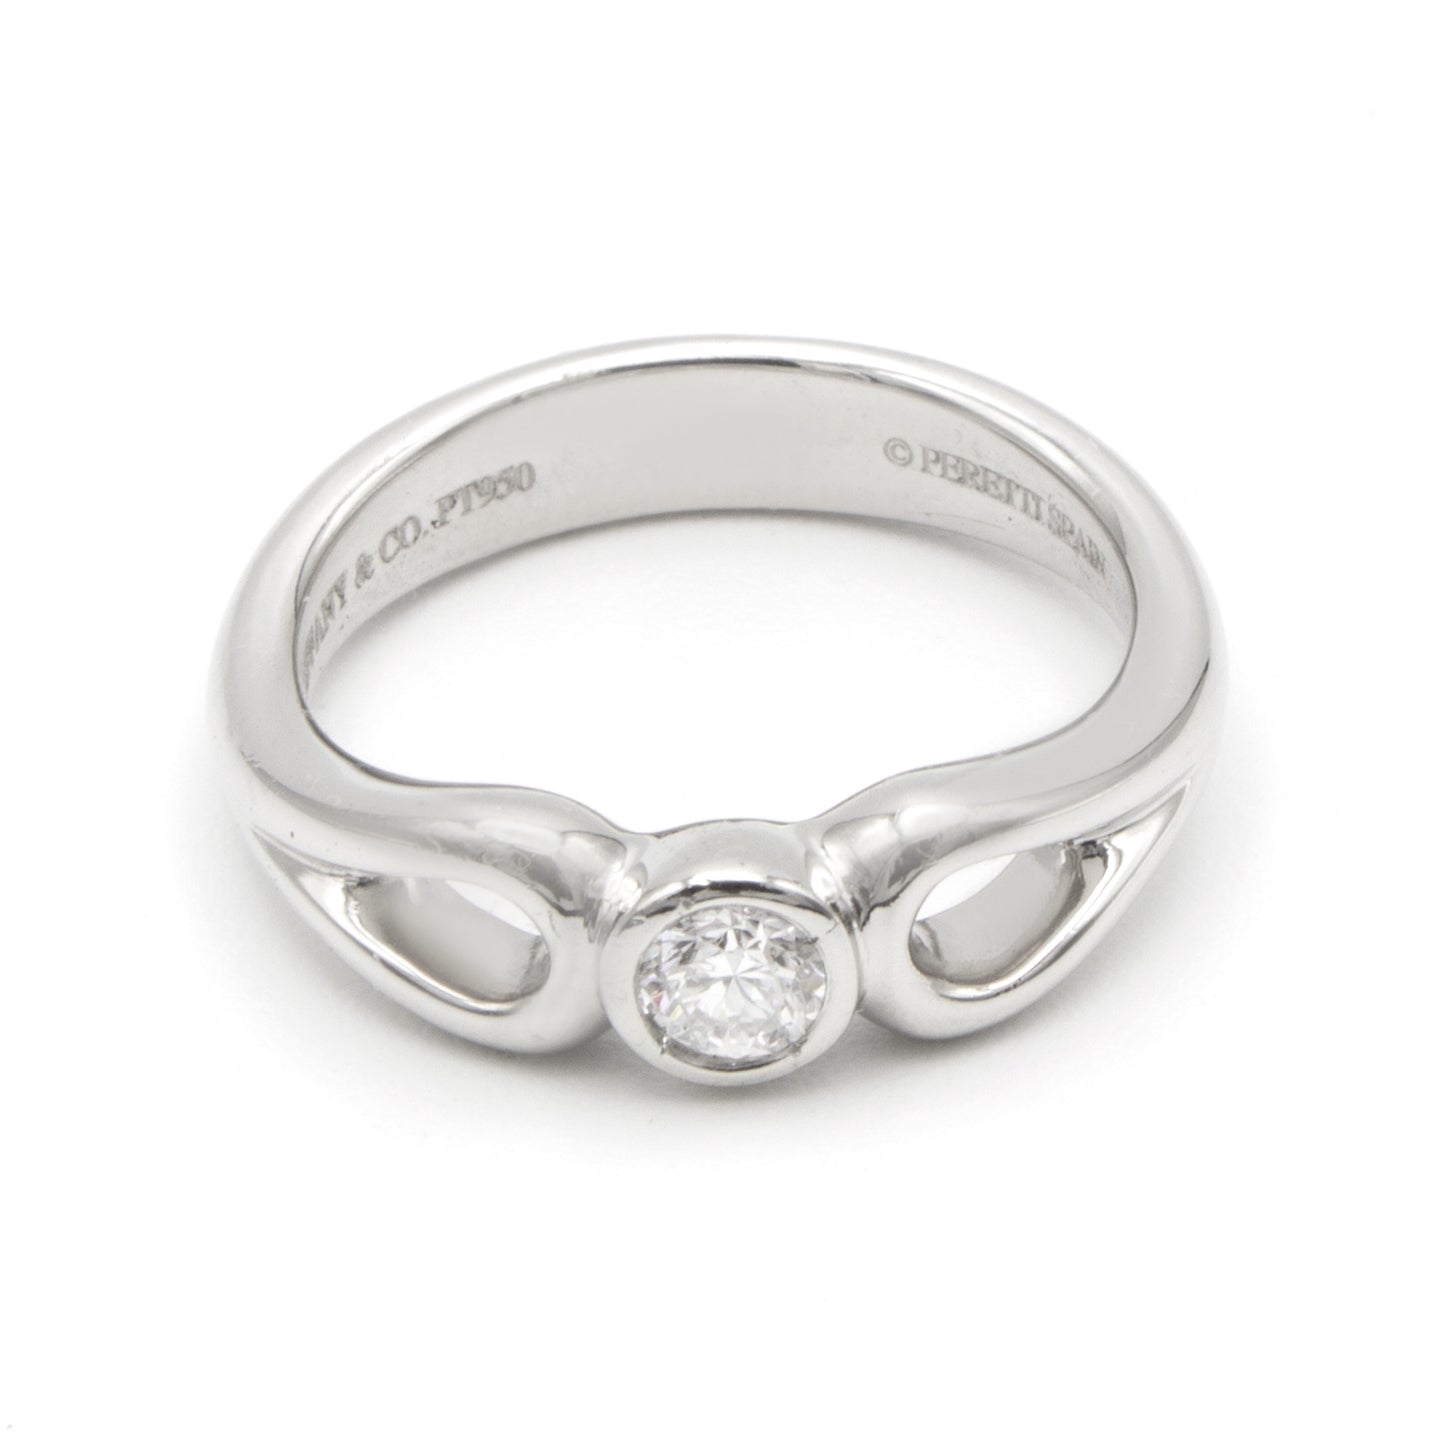 Tiffany Open Teardrop ring